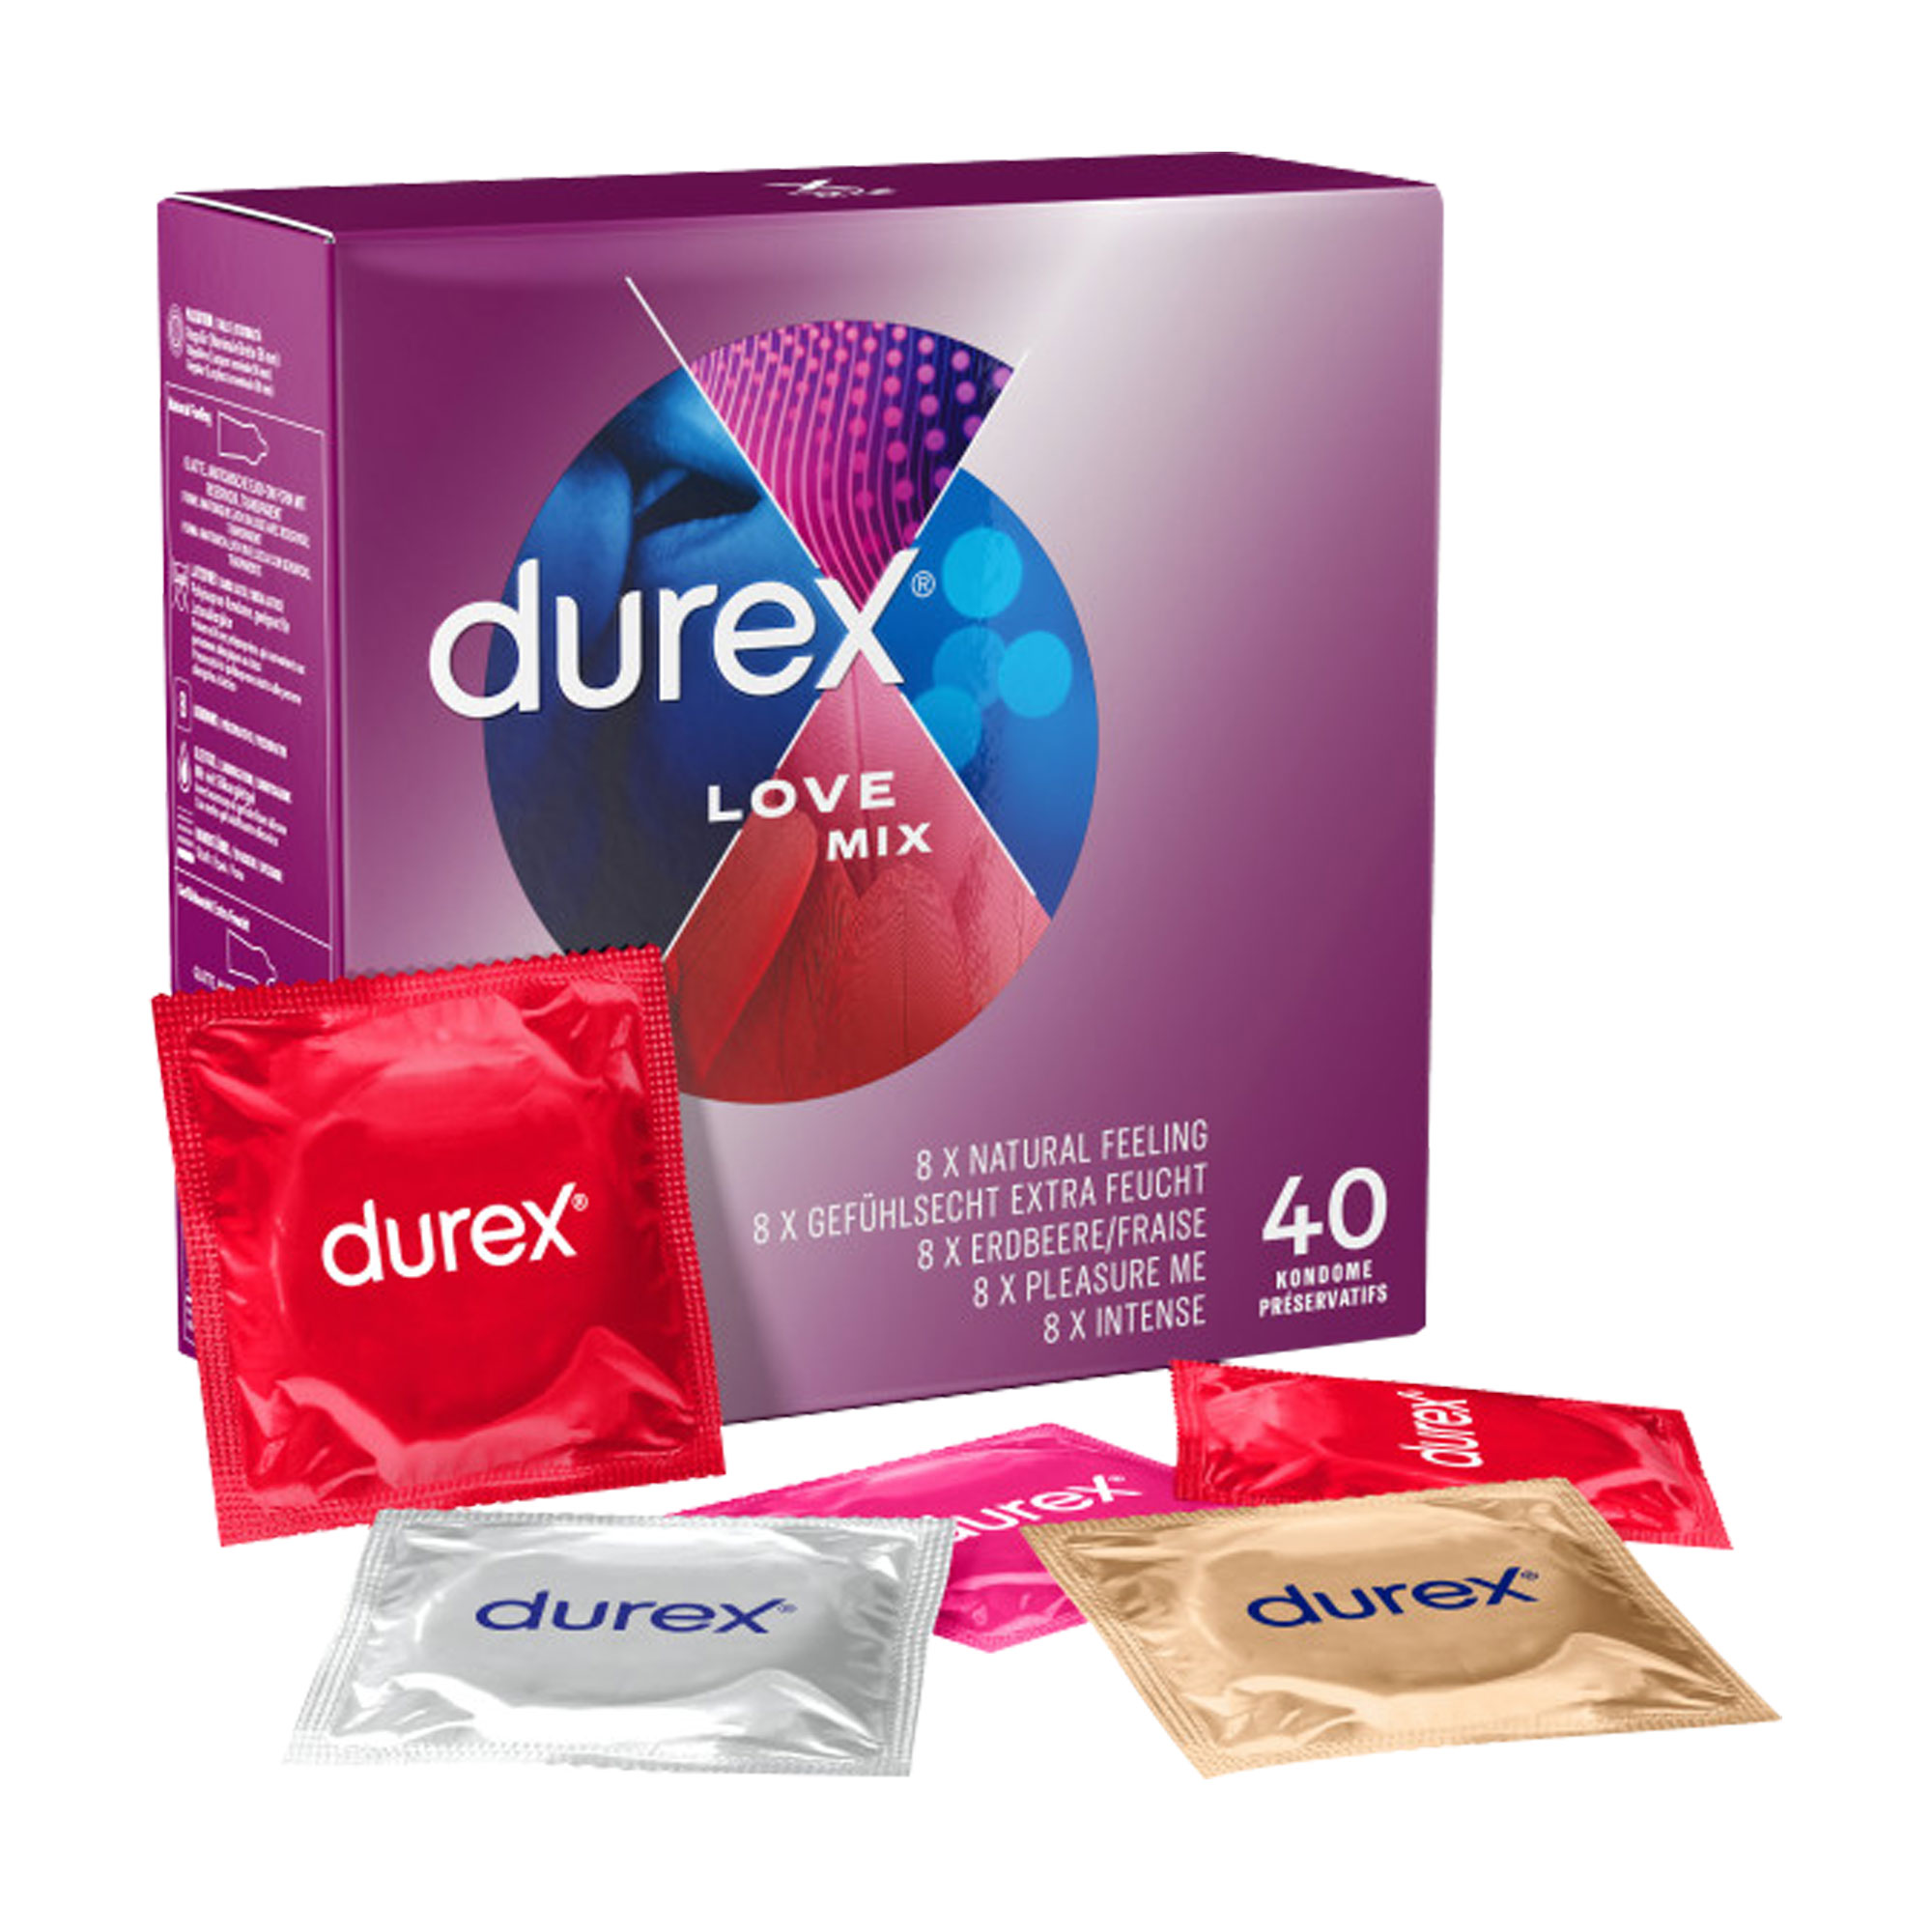 Kondommix für sinnliche Erlebnisse. 5 verschiedene Sorten.